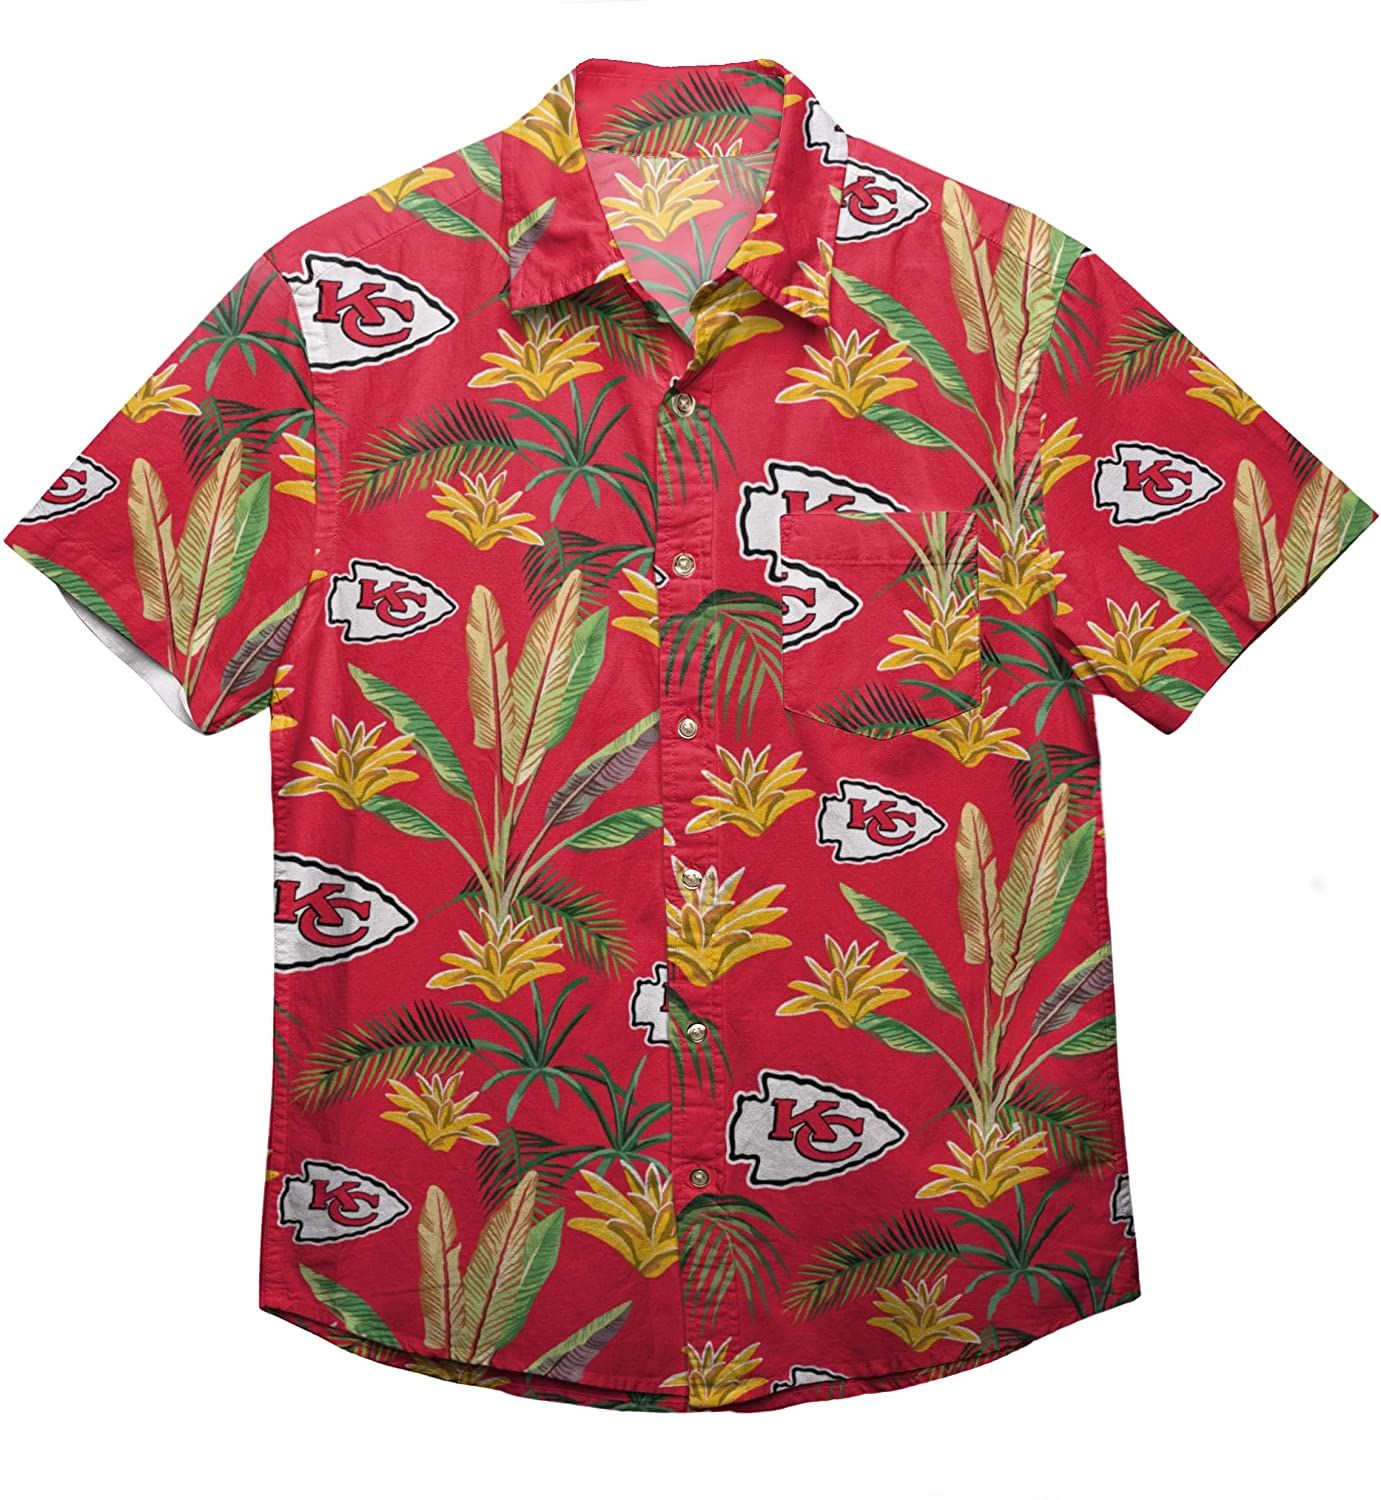 Kansas City Chiefs NFL Hawaiian Shirt For Fans - Meteew